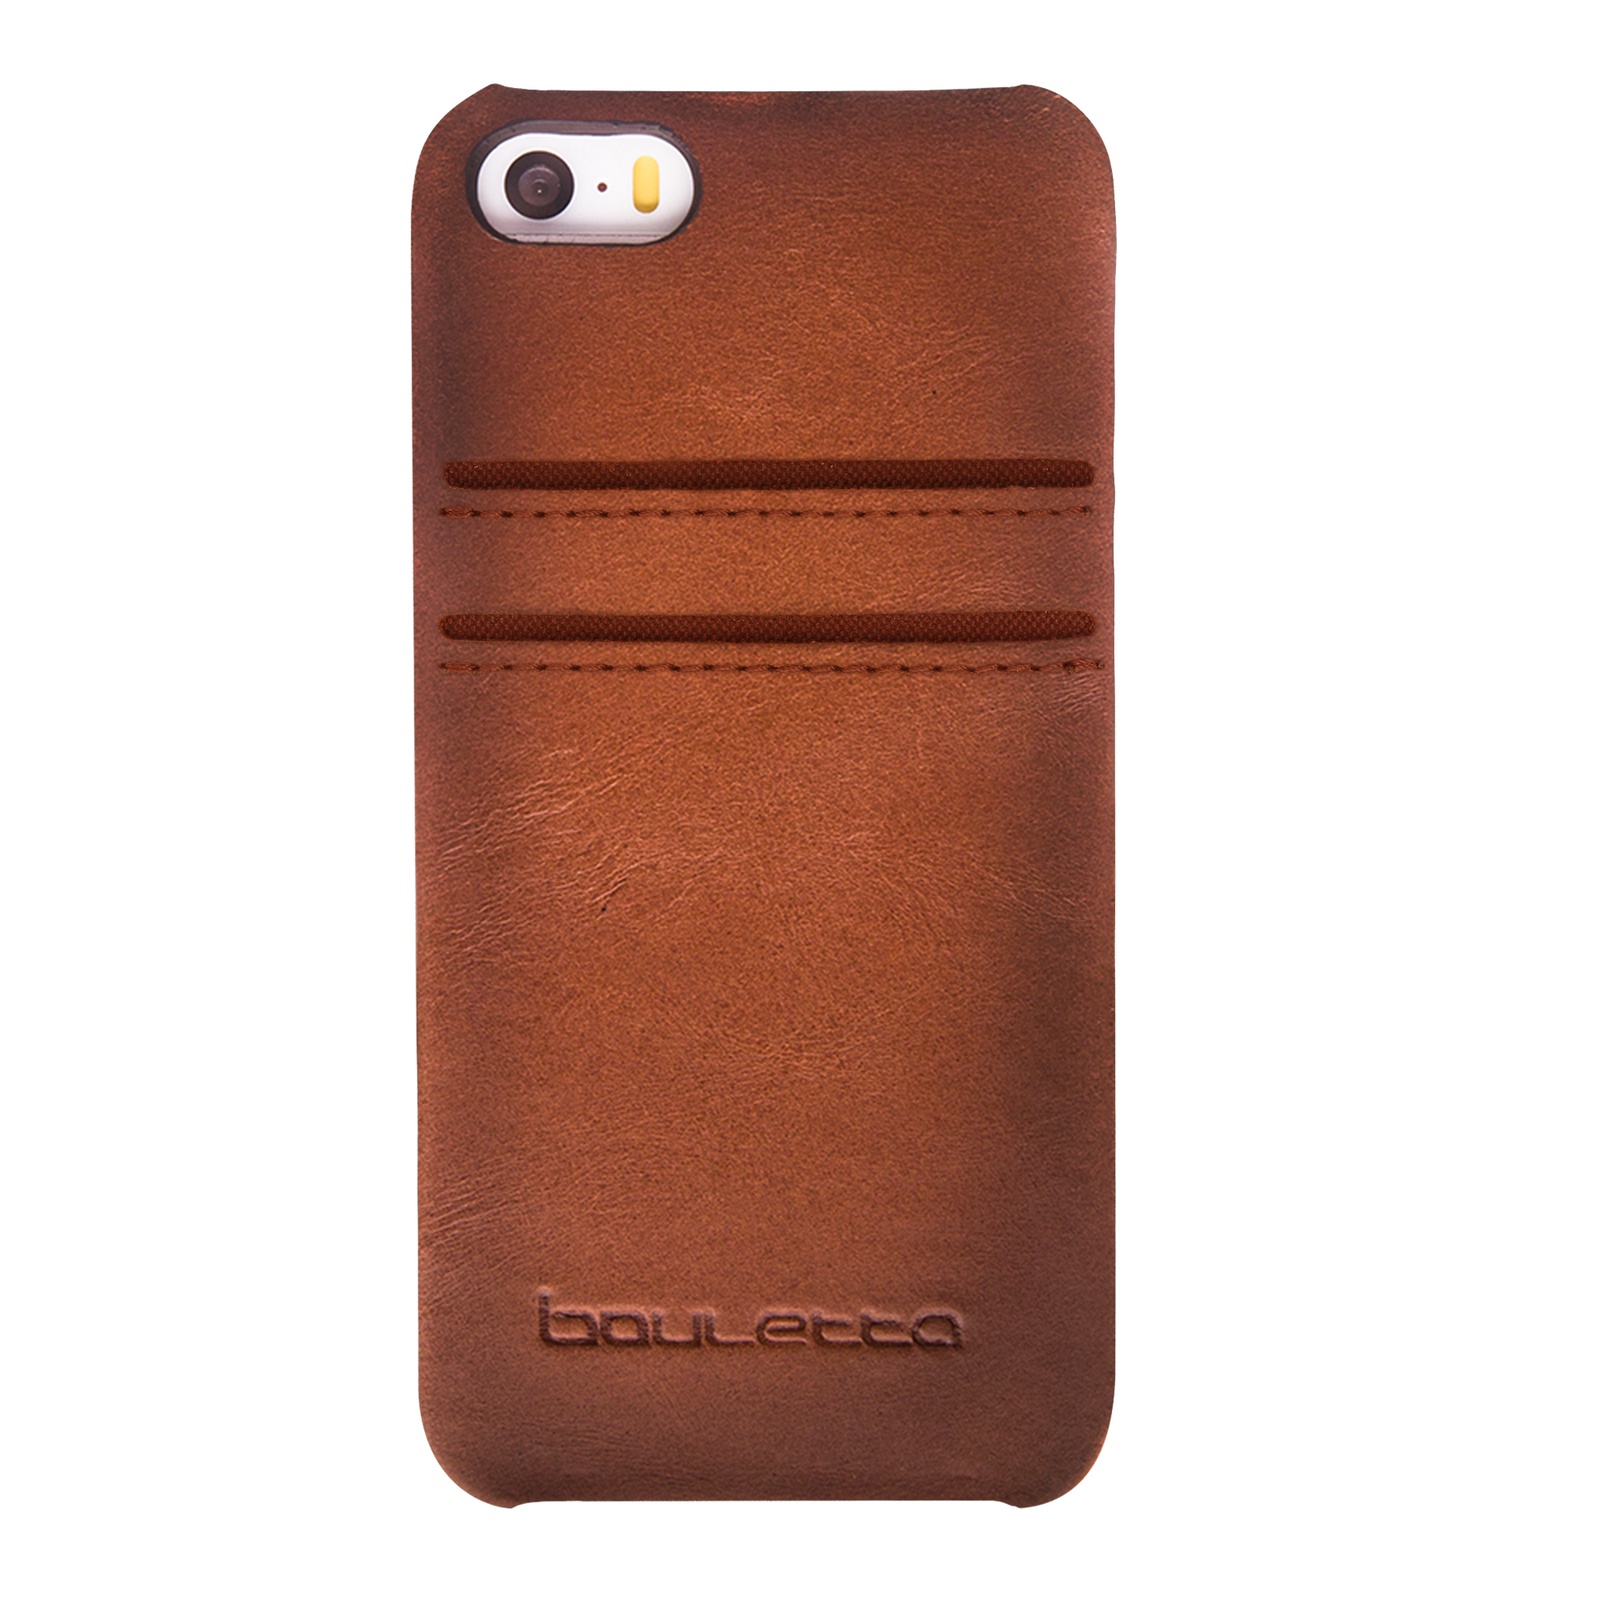 Чехол для сотового телефона Bouletta для iPhone 5/SE Ultimate Jacket CC, бронза